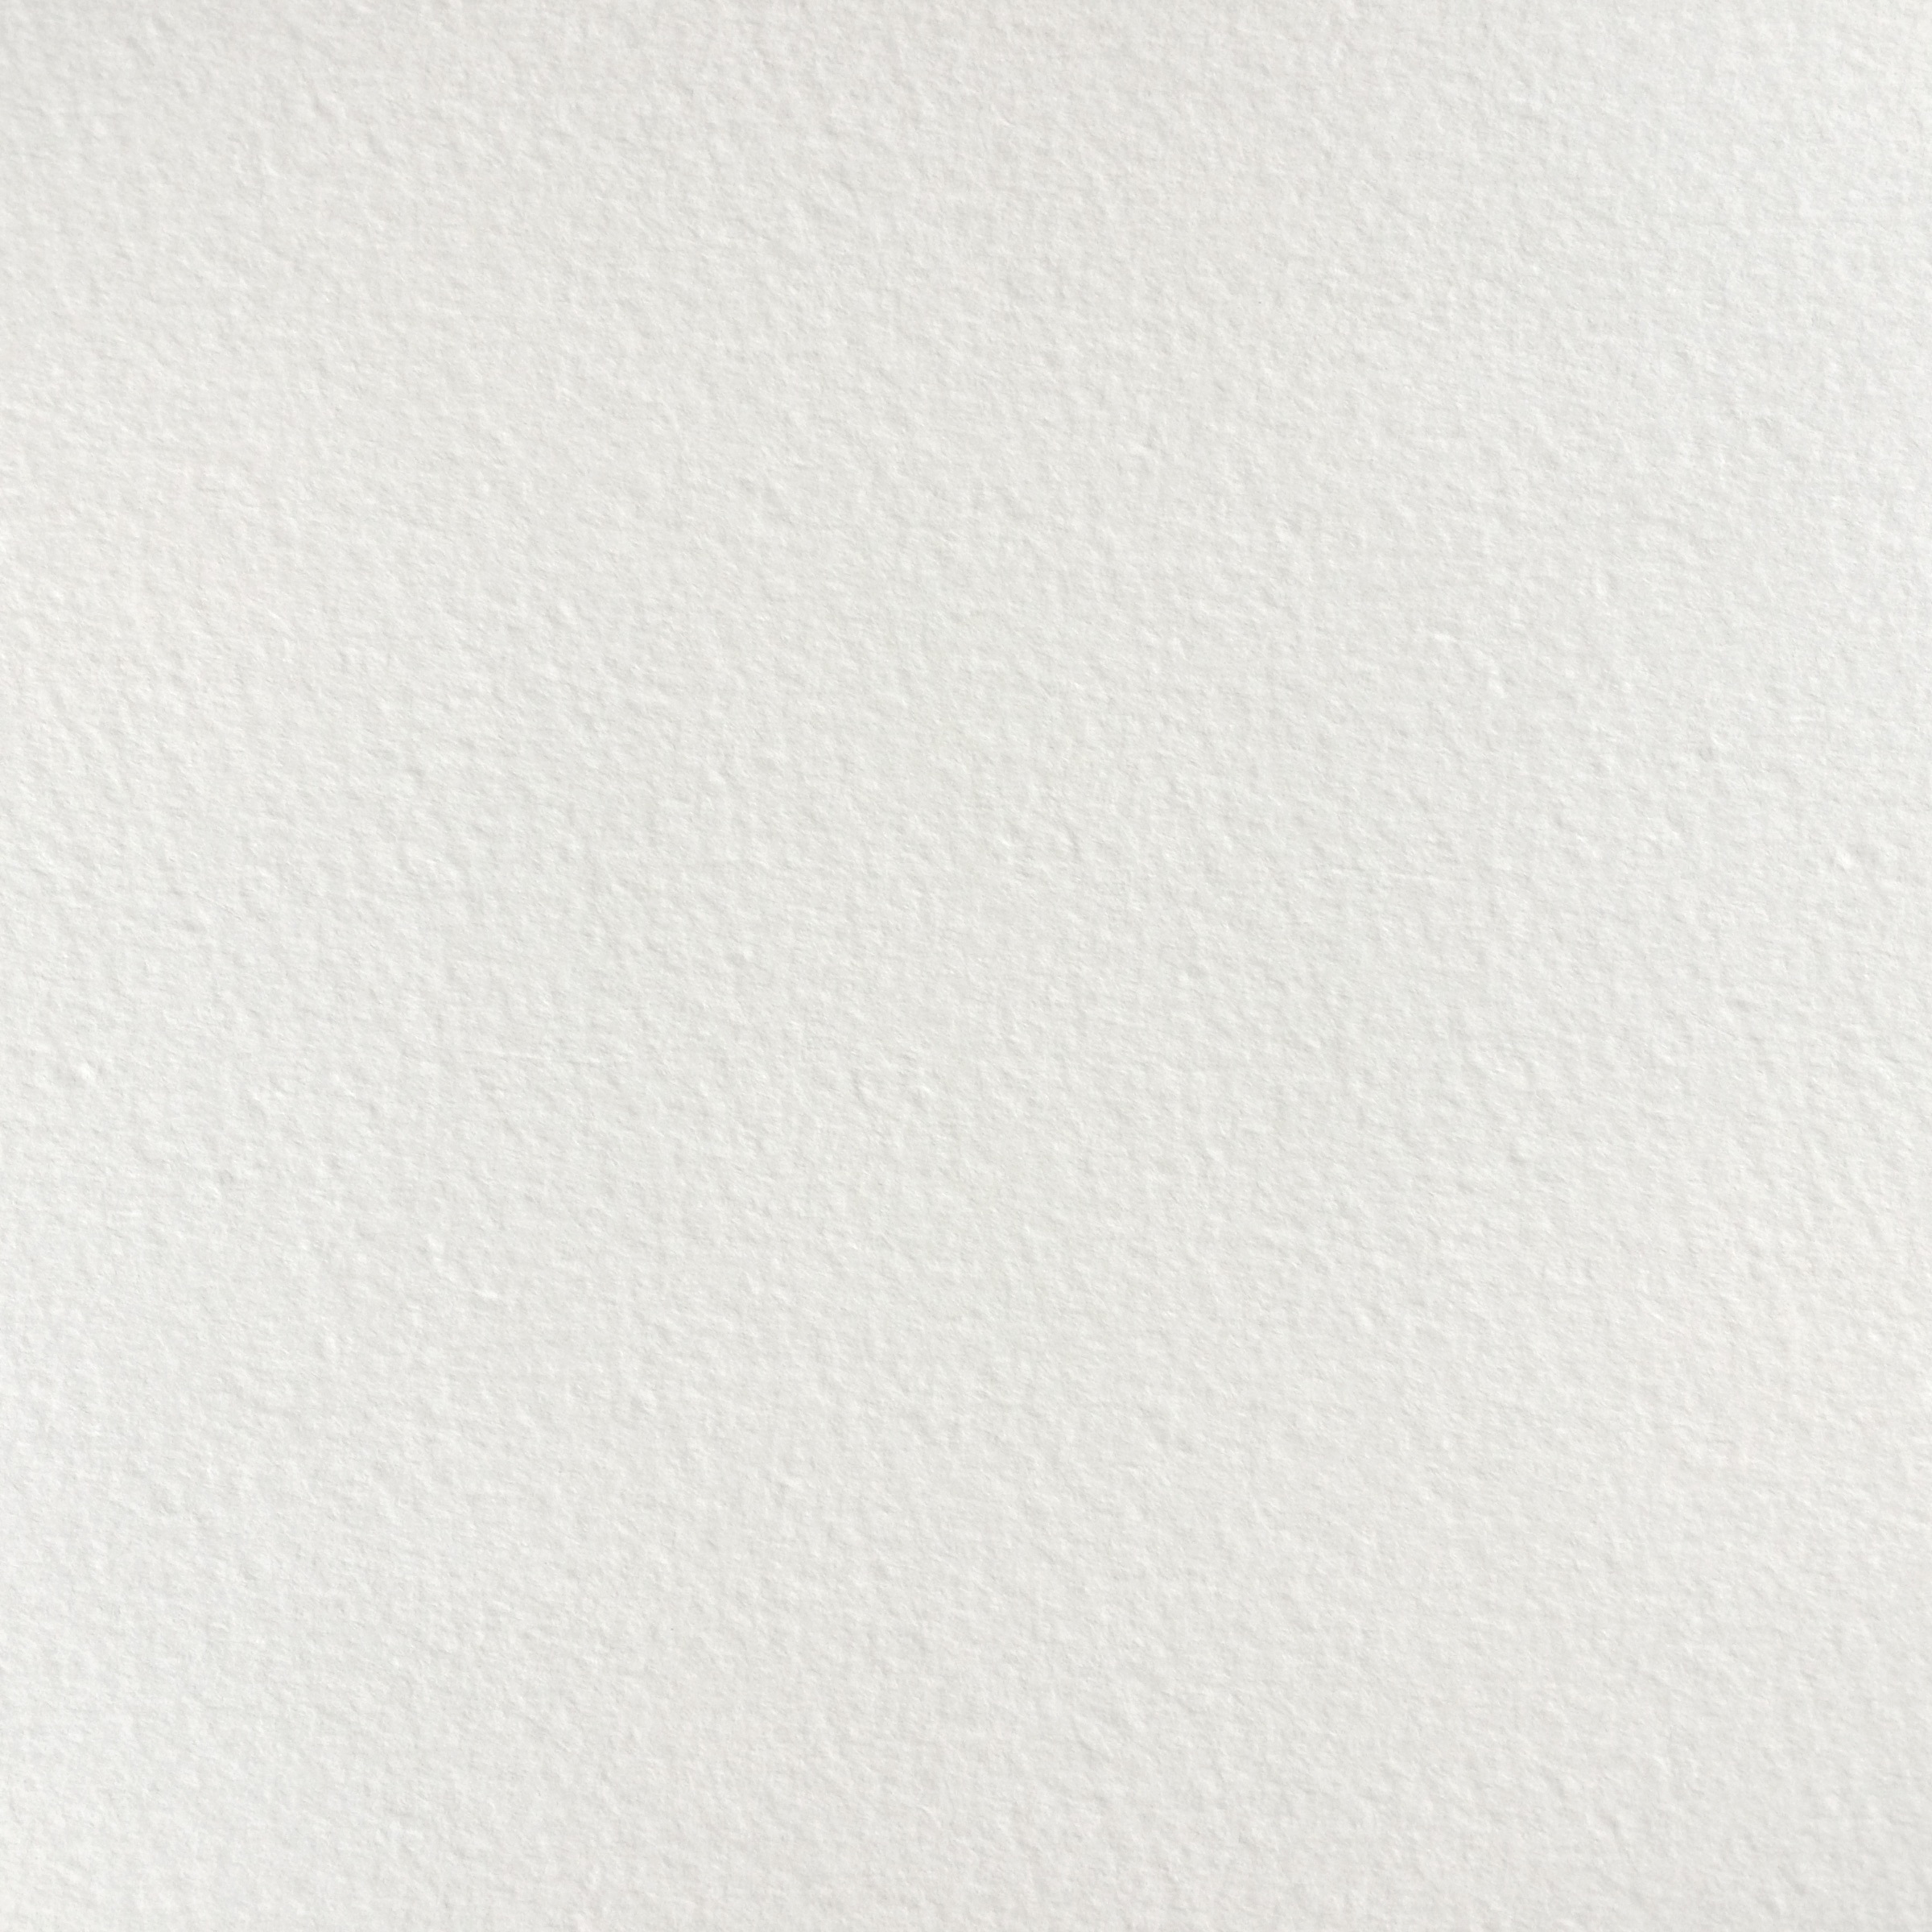 Wallpapers white texture floor on the desktop